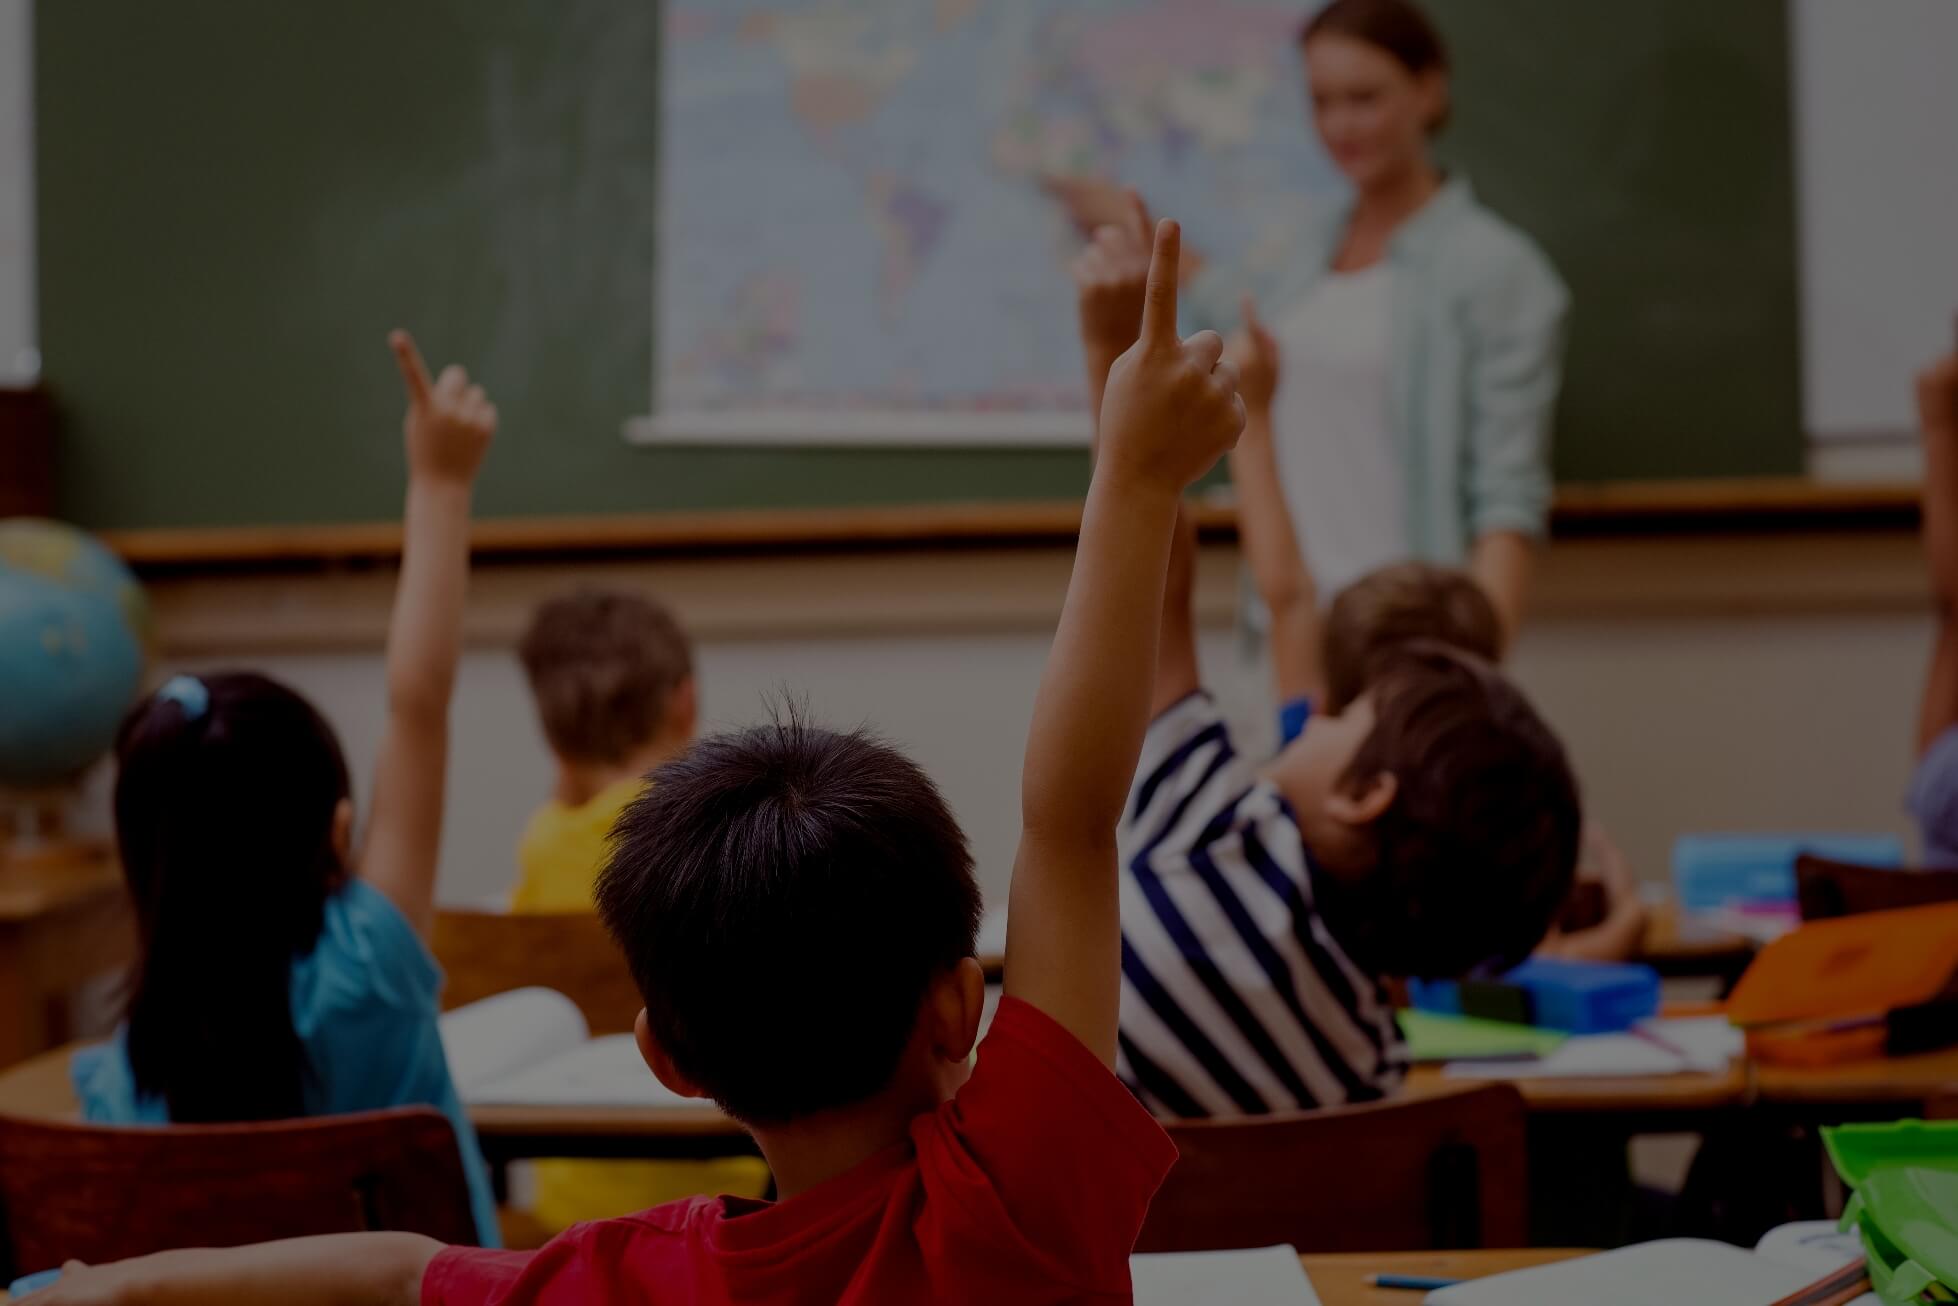 children in classroom raise their hands